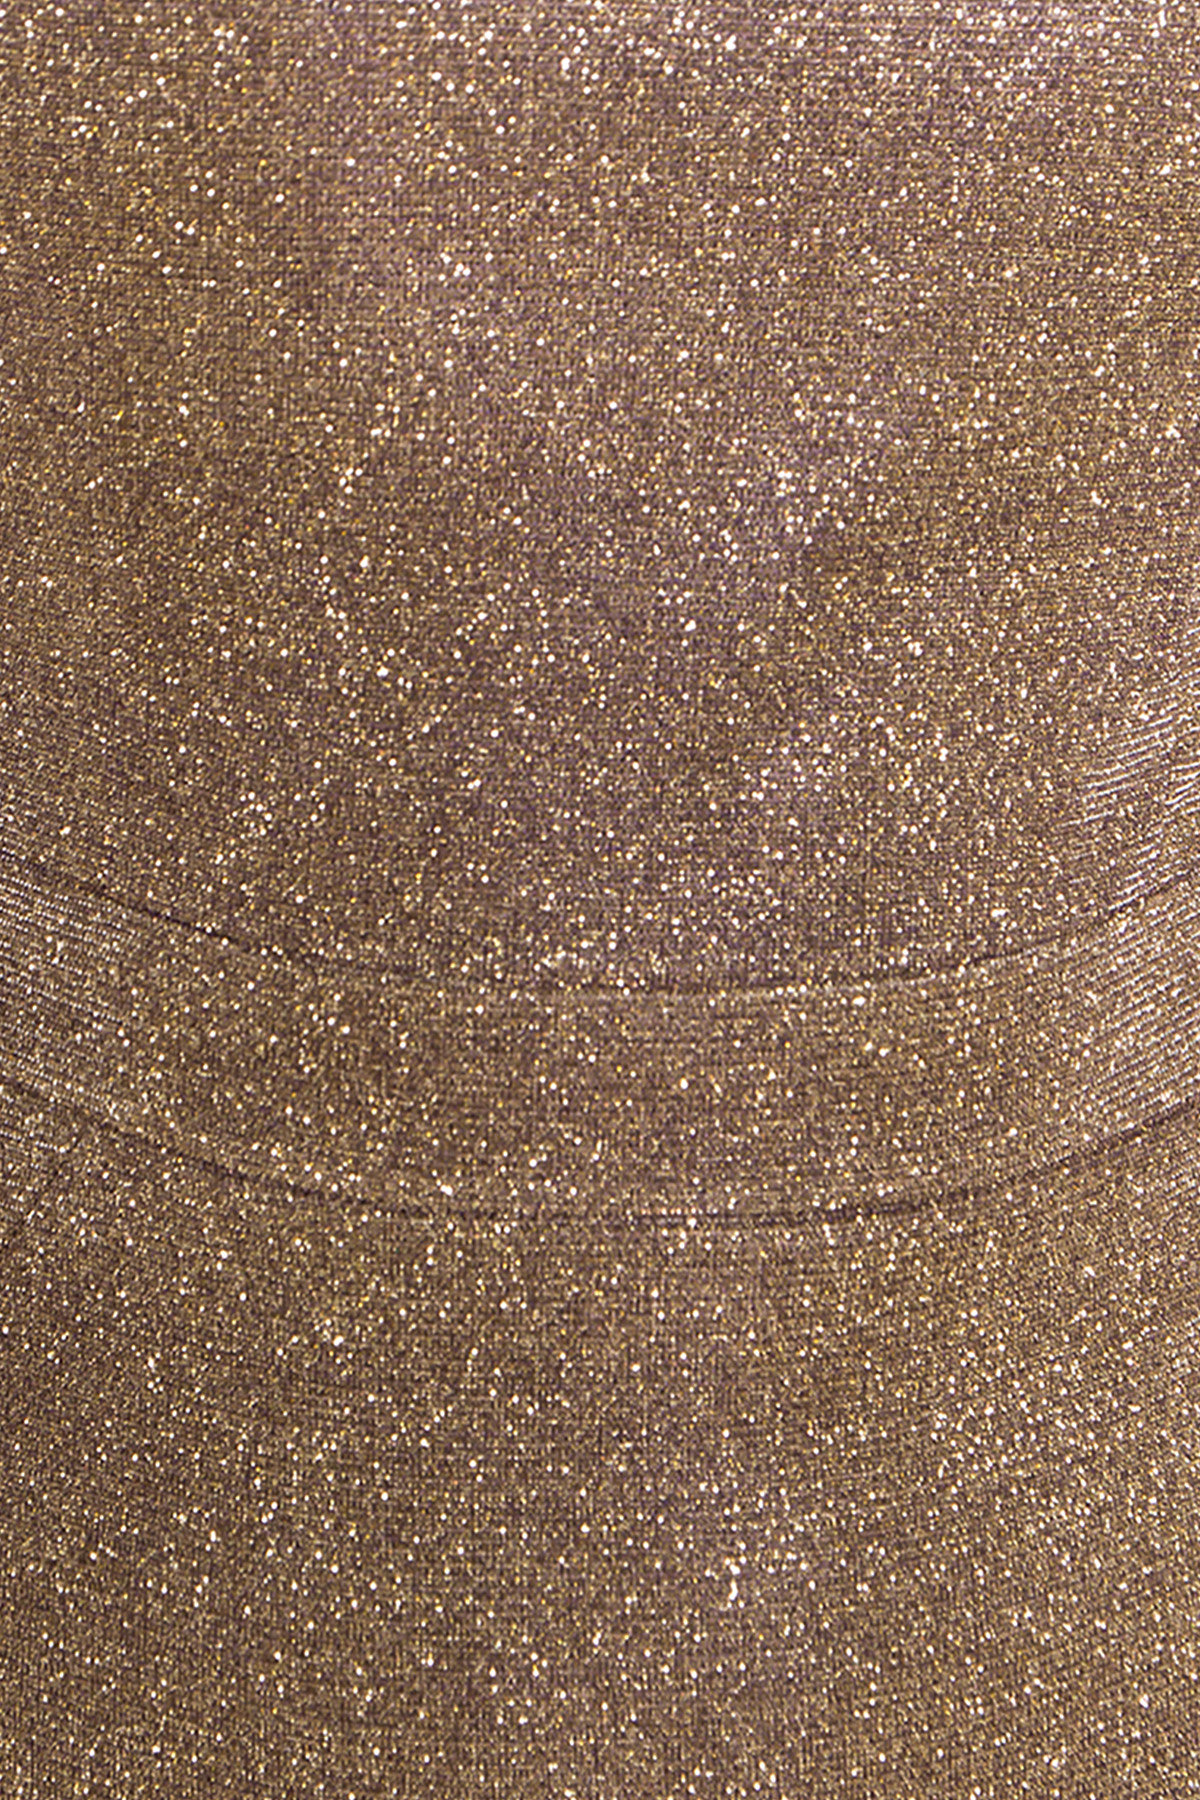 Платье-хамелеон из трикотажа с люрексом Инглот 8428 Цвет: Золото/серебро